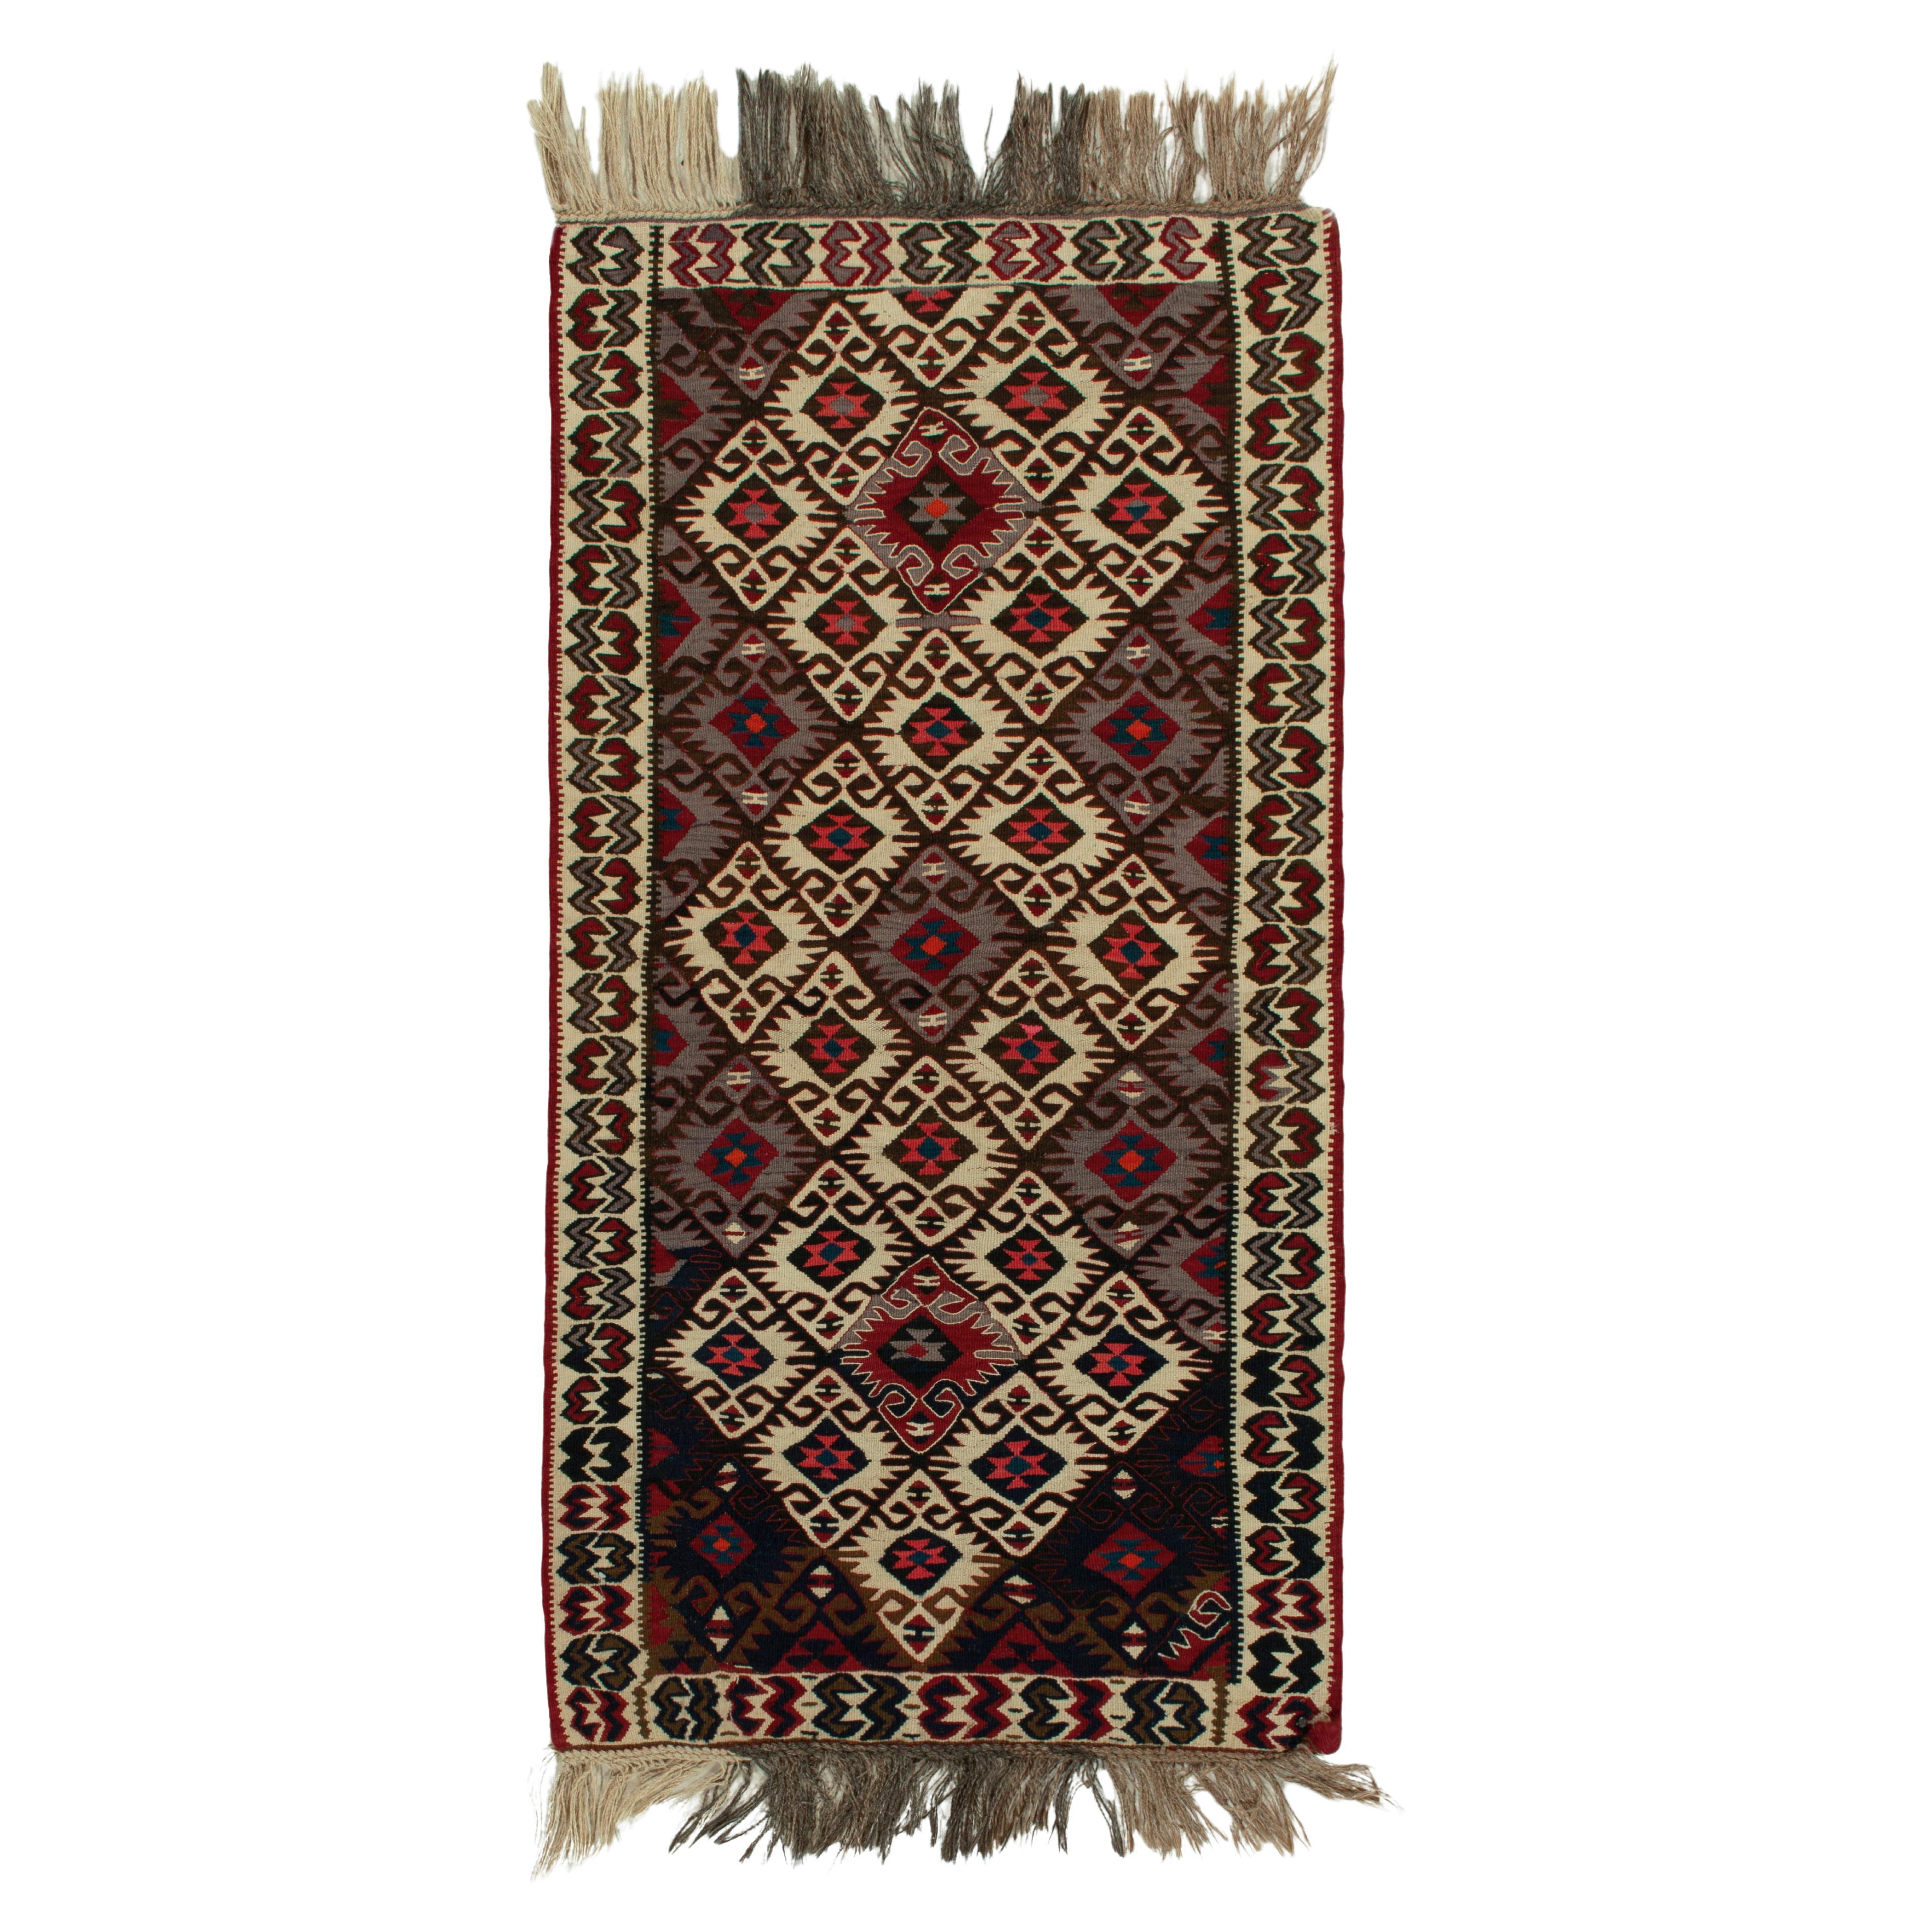 Antique Turkish Kilim Rug in Beige-Brown, Gray Tribal Pattern by Rug & Kilim